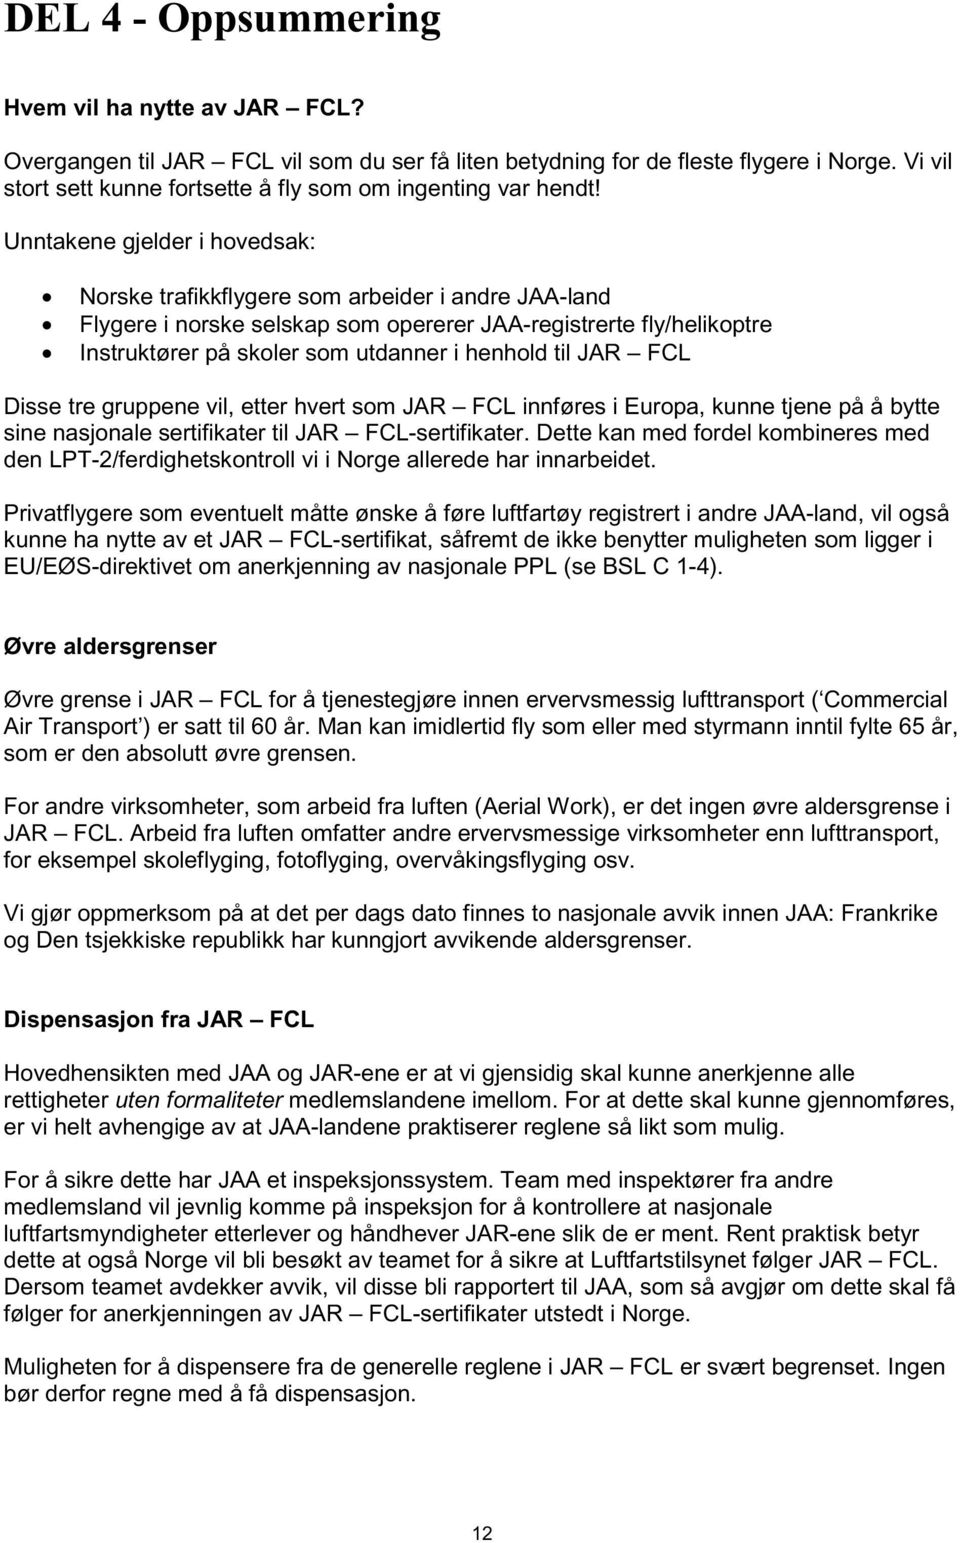 Unntakene gjelder i hovedsak: Norske trafikkflygere som arbeider i andre JAA-land Flygere i norske selskap som opererer JAA-registrerte fly/helikoptre Instruktører på skoler som utdanner i henhold